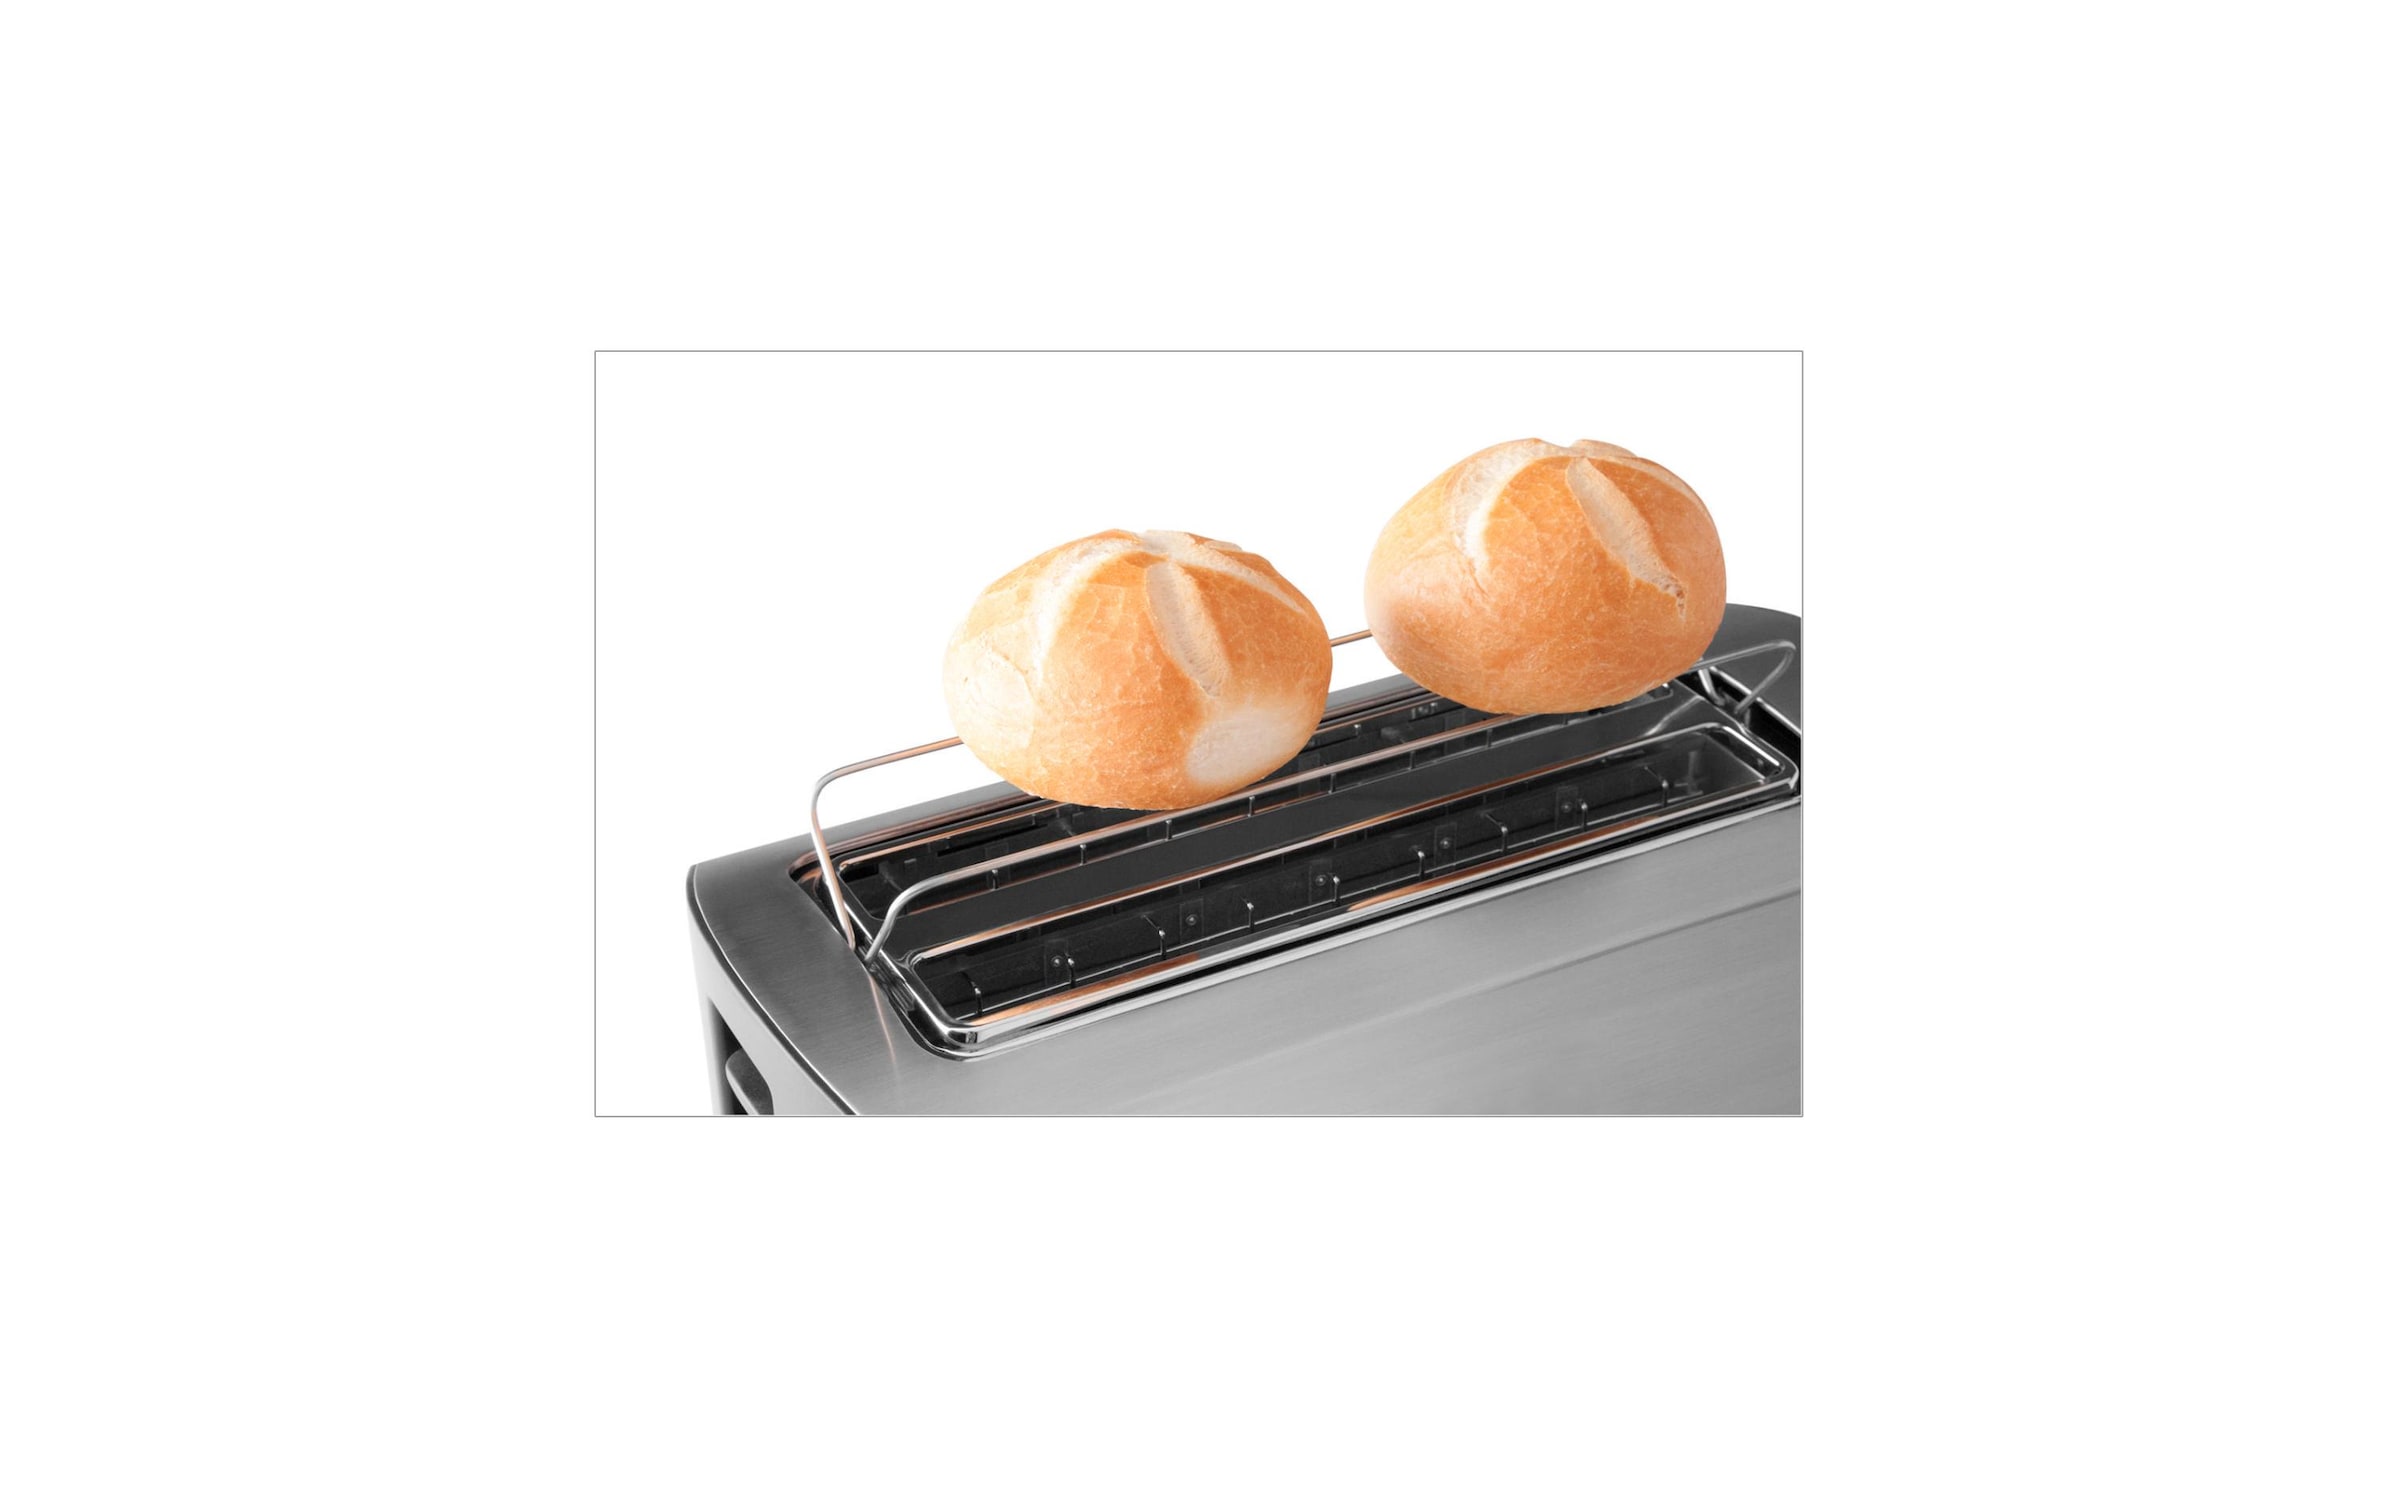 Gastroback Toaster »Gastroback«, 950 W